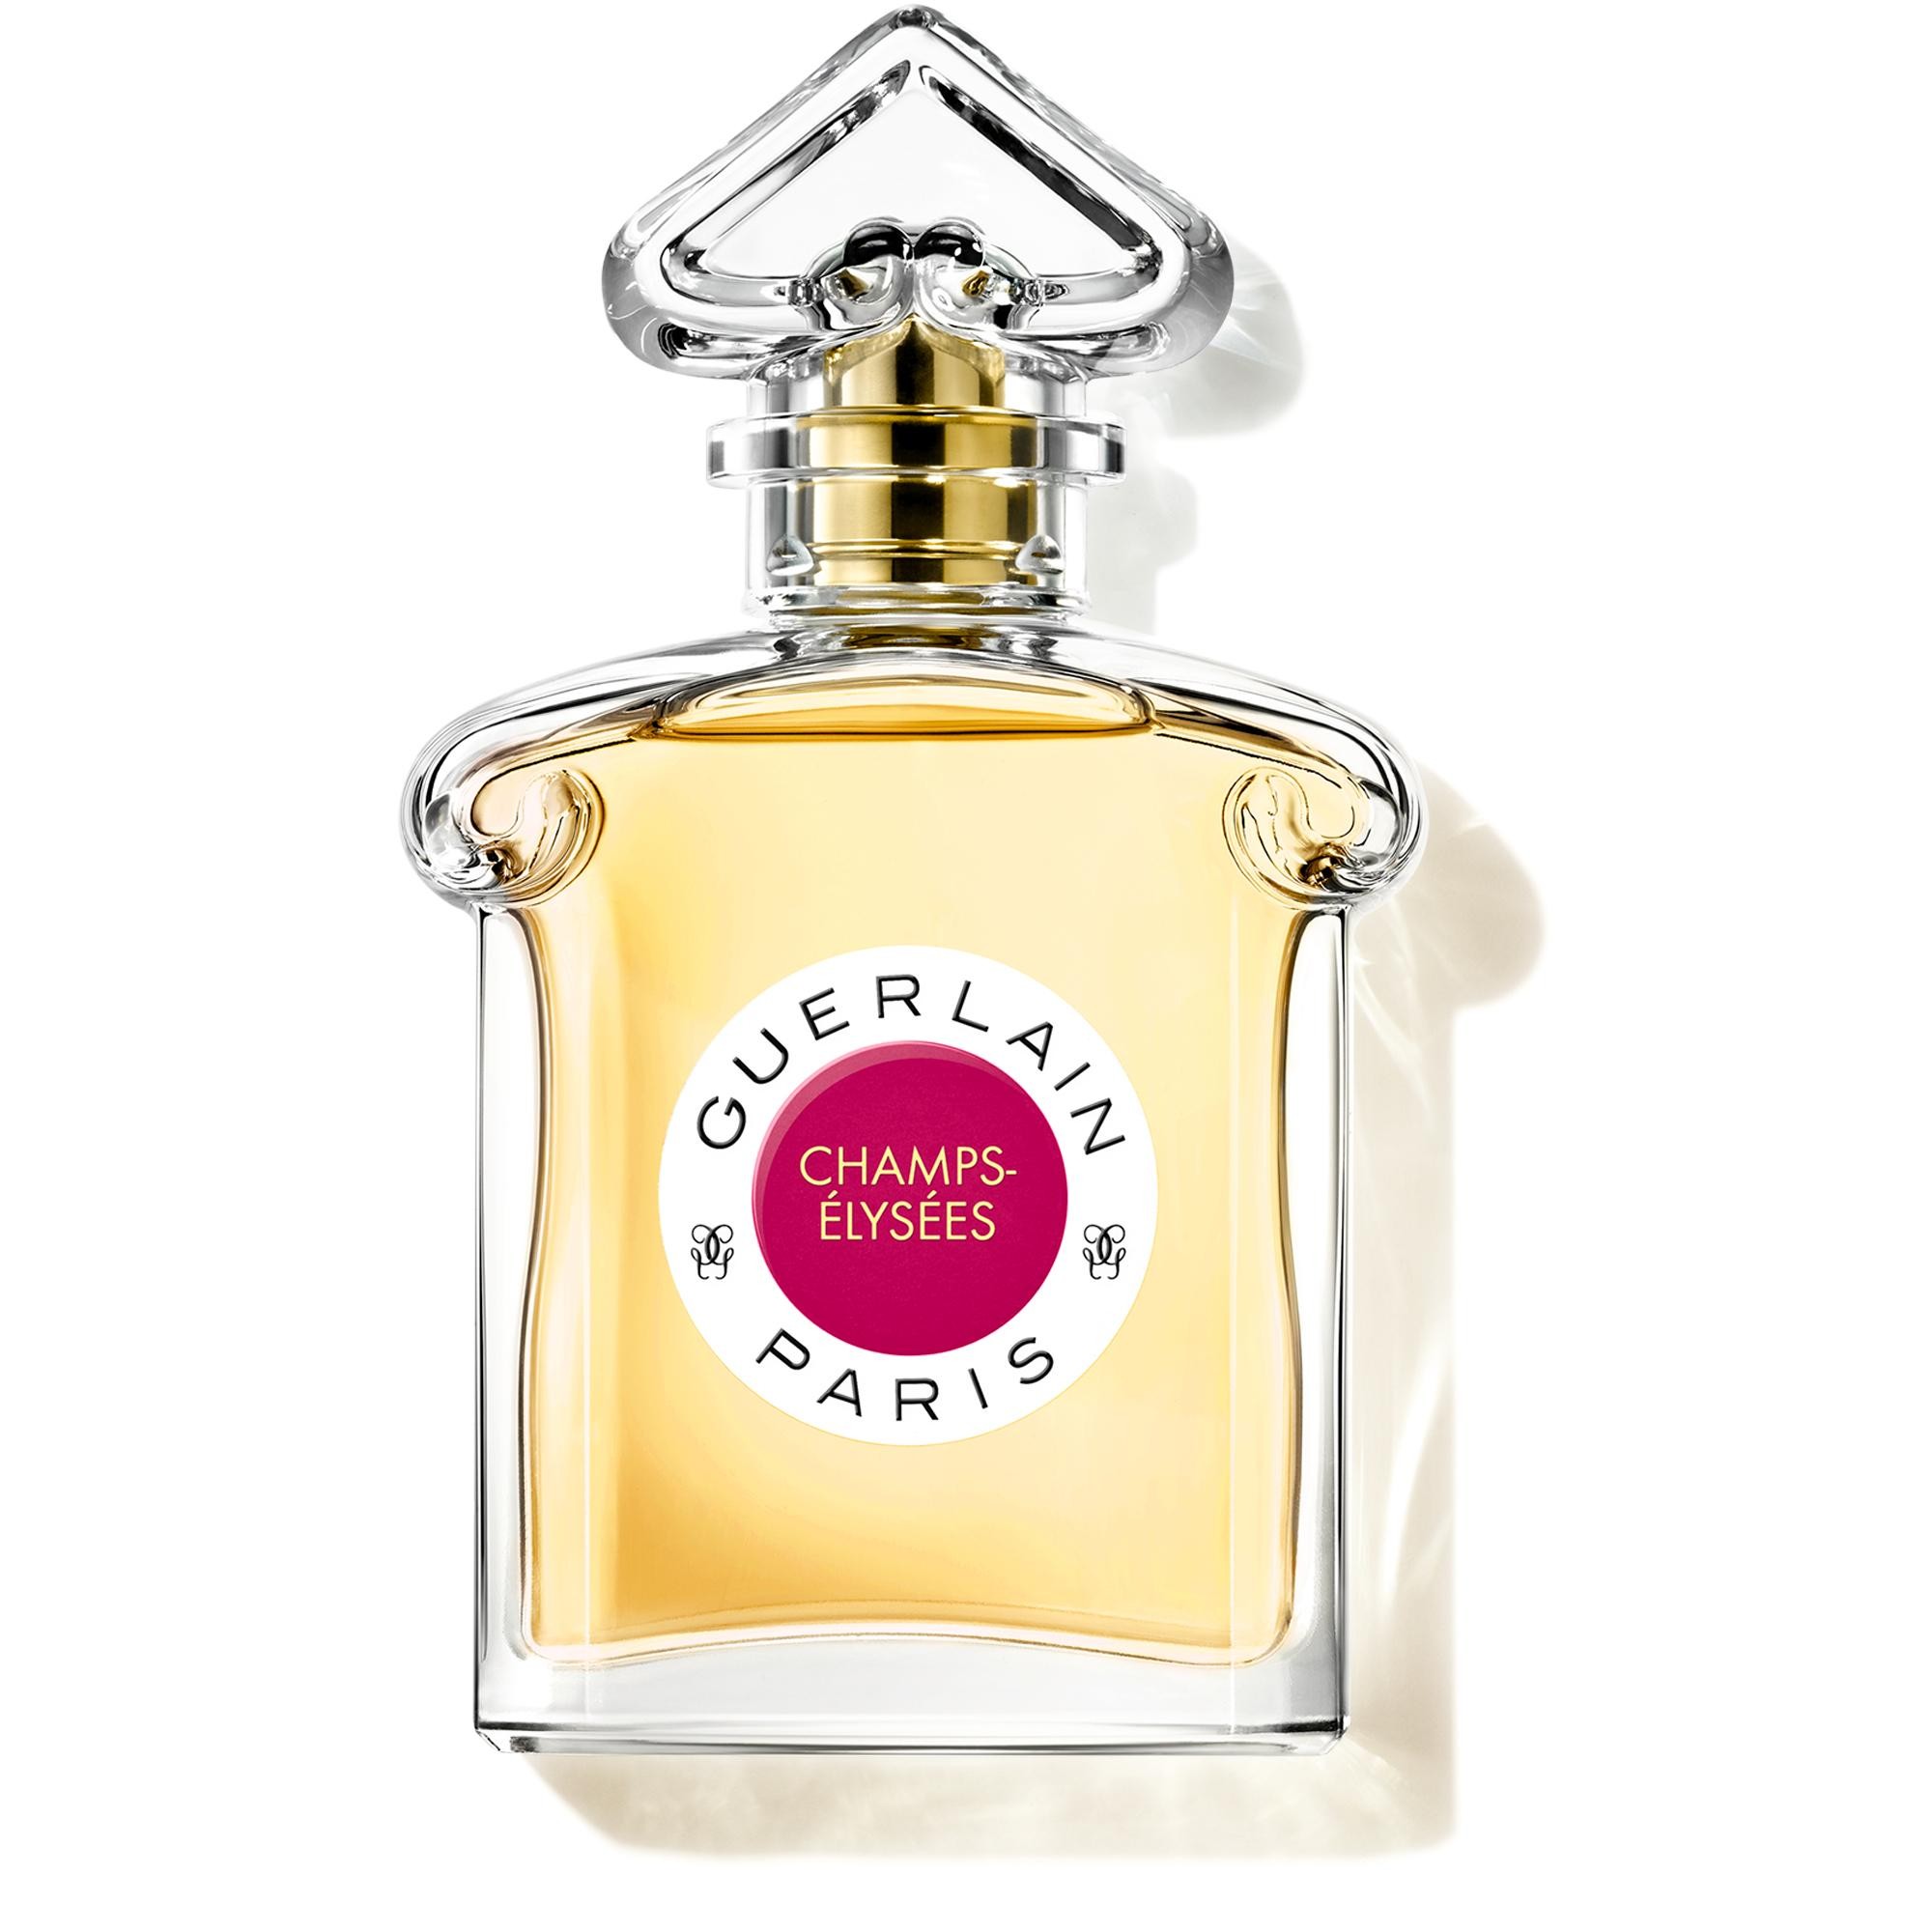 Guerlain Champs-elysées Eau De Parfum 75ml